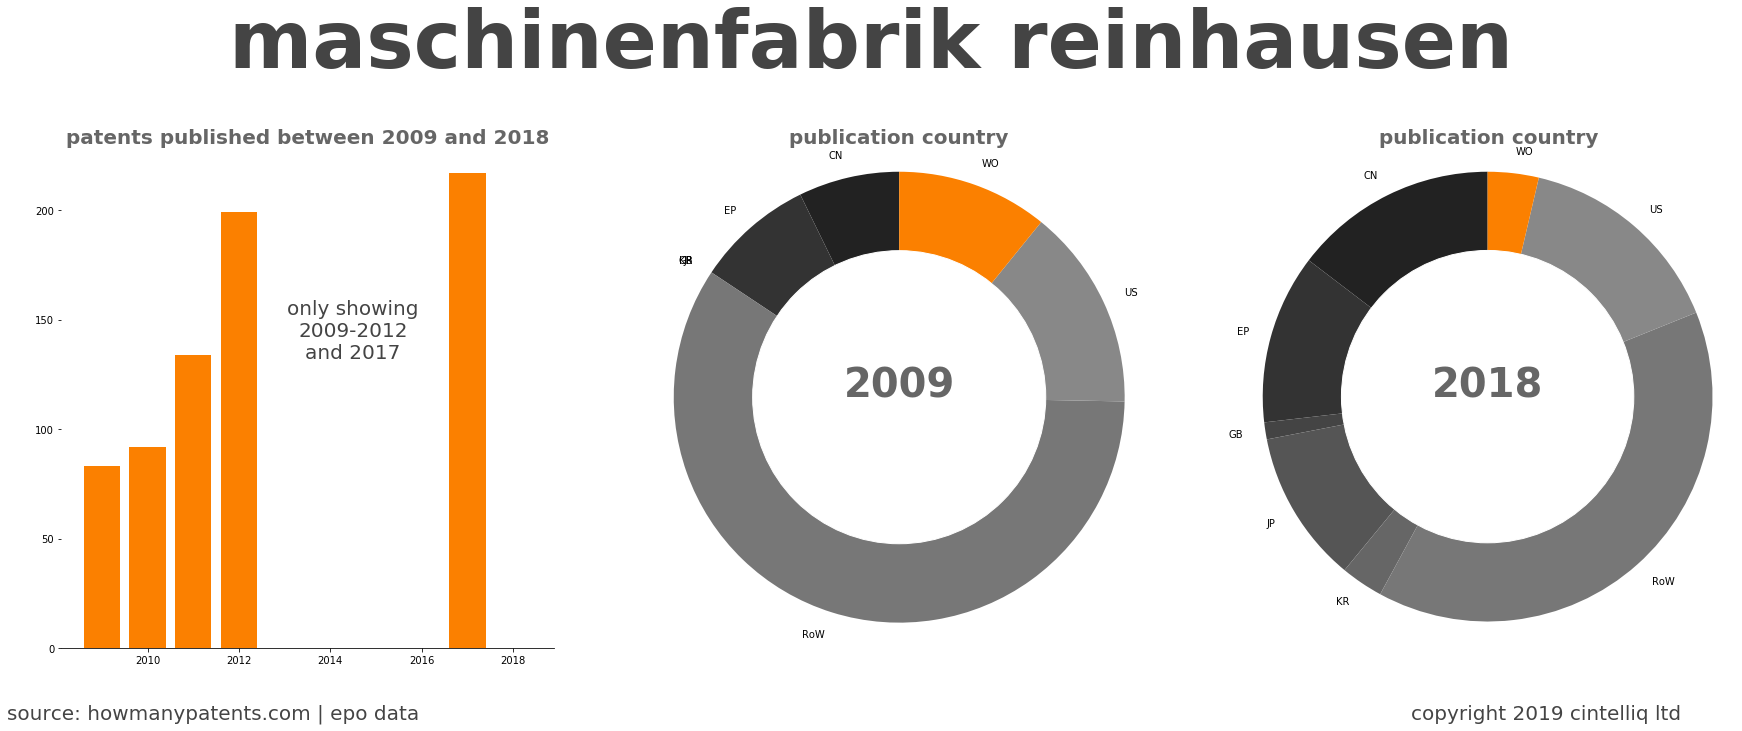 summary of patents for Maschinenfabrik Reinhausen